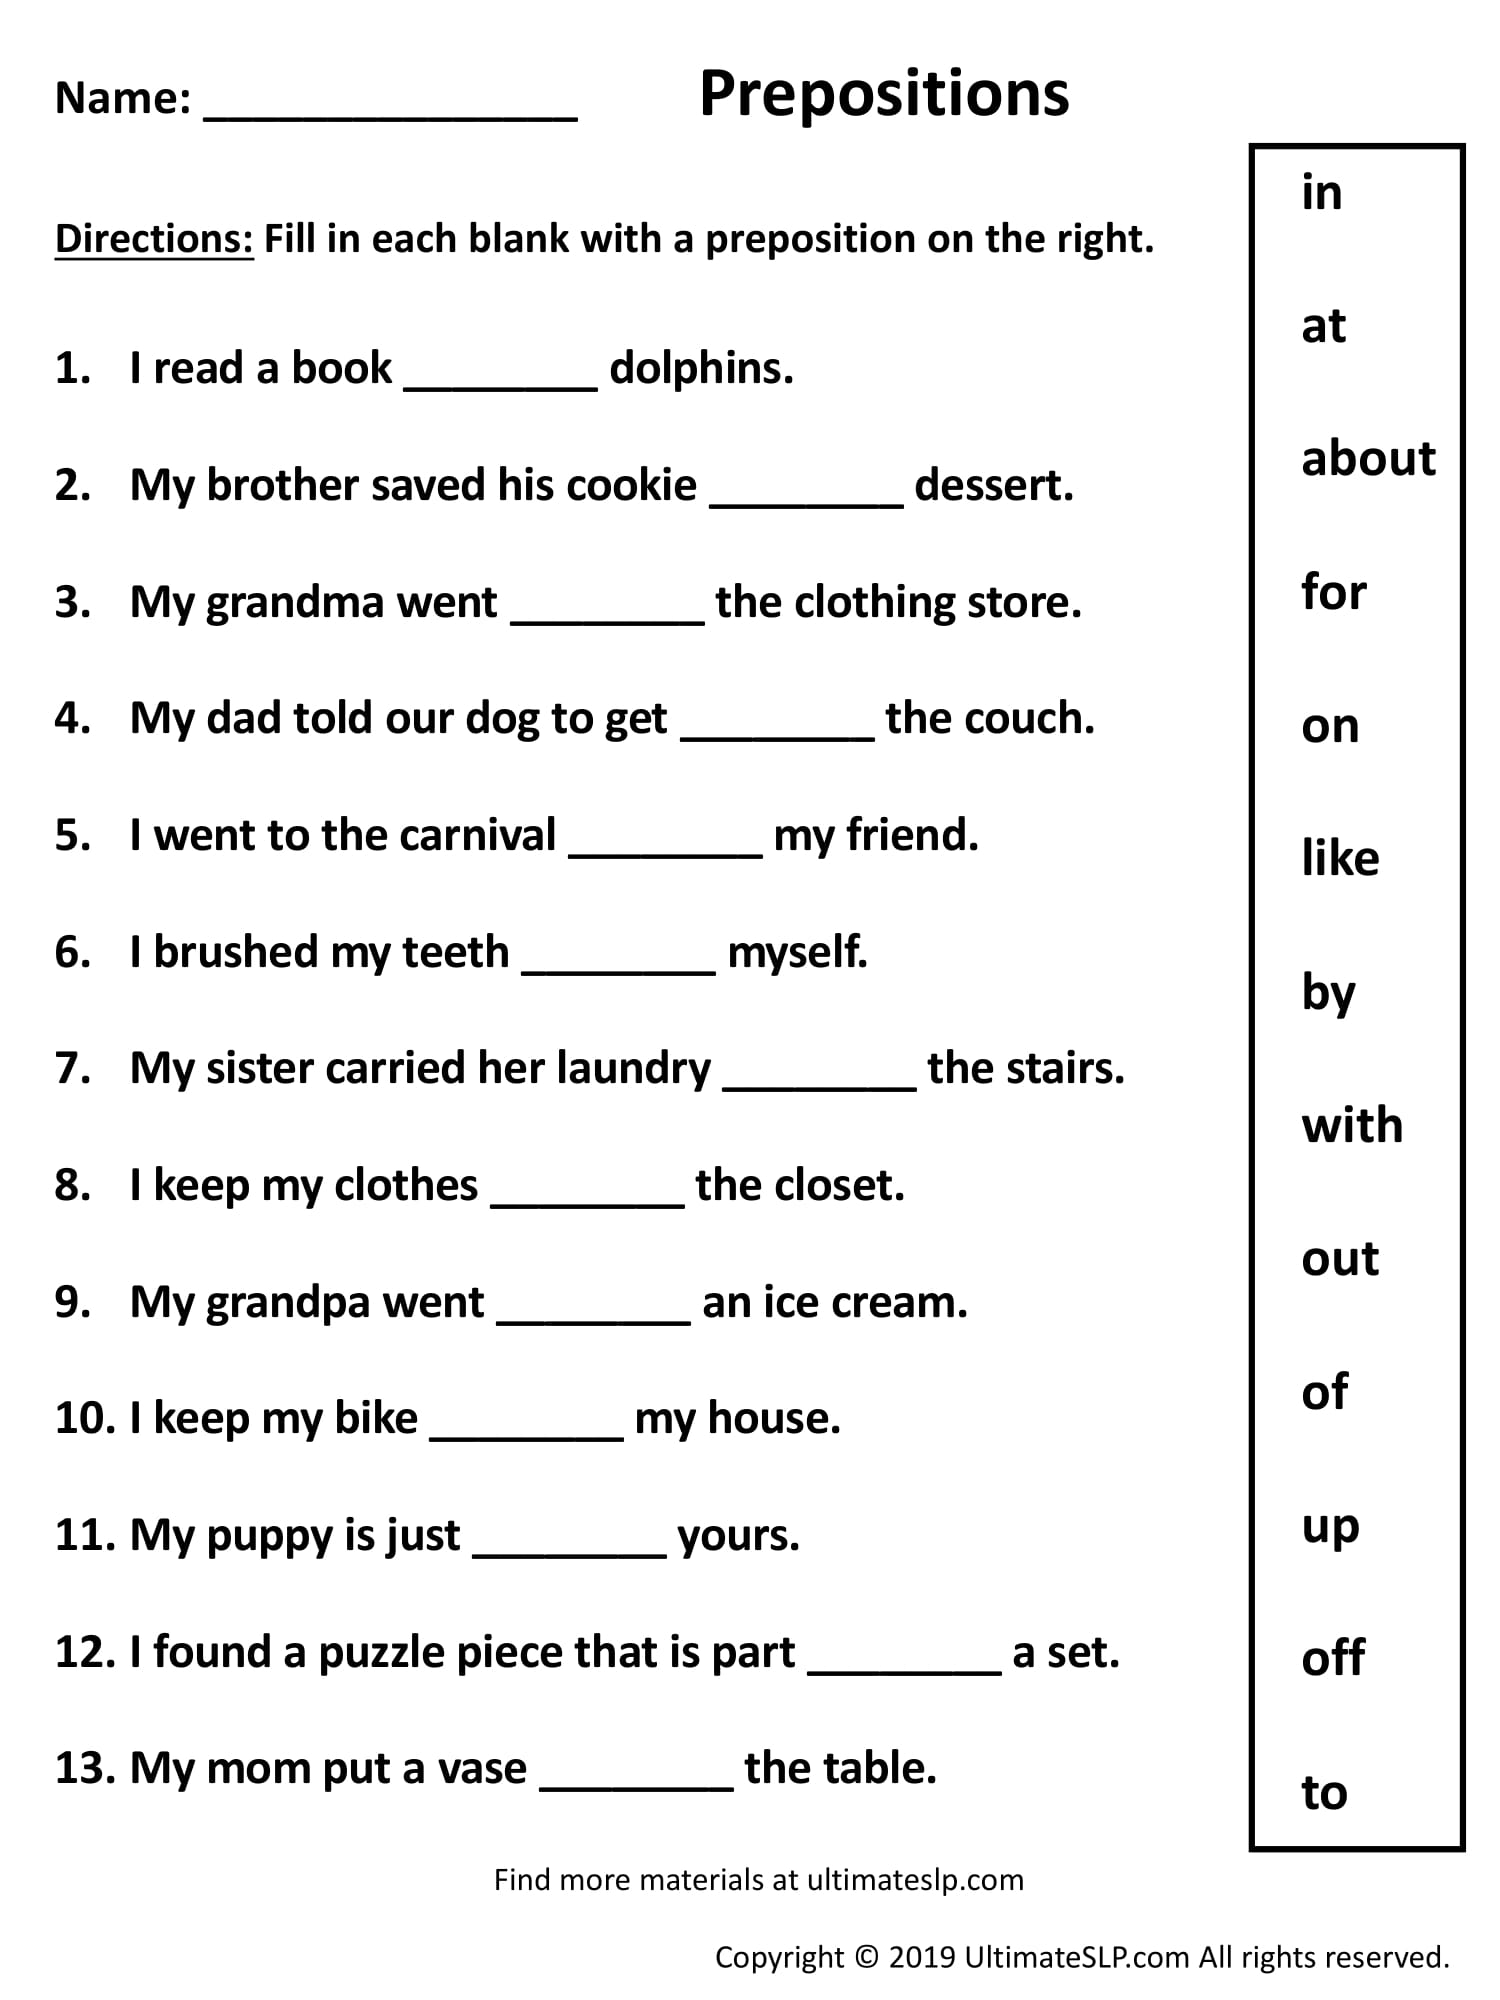 Prepositions Worksheet Class 10